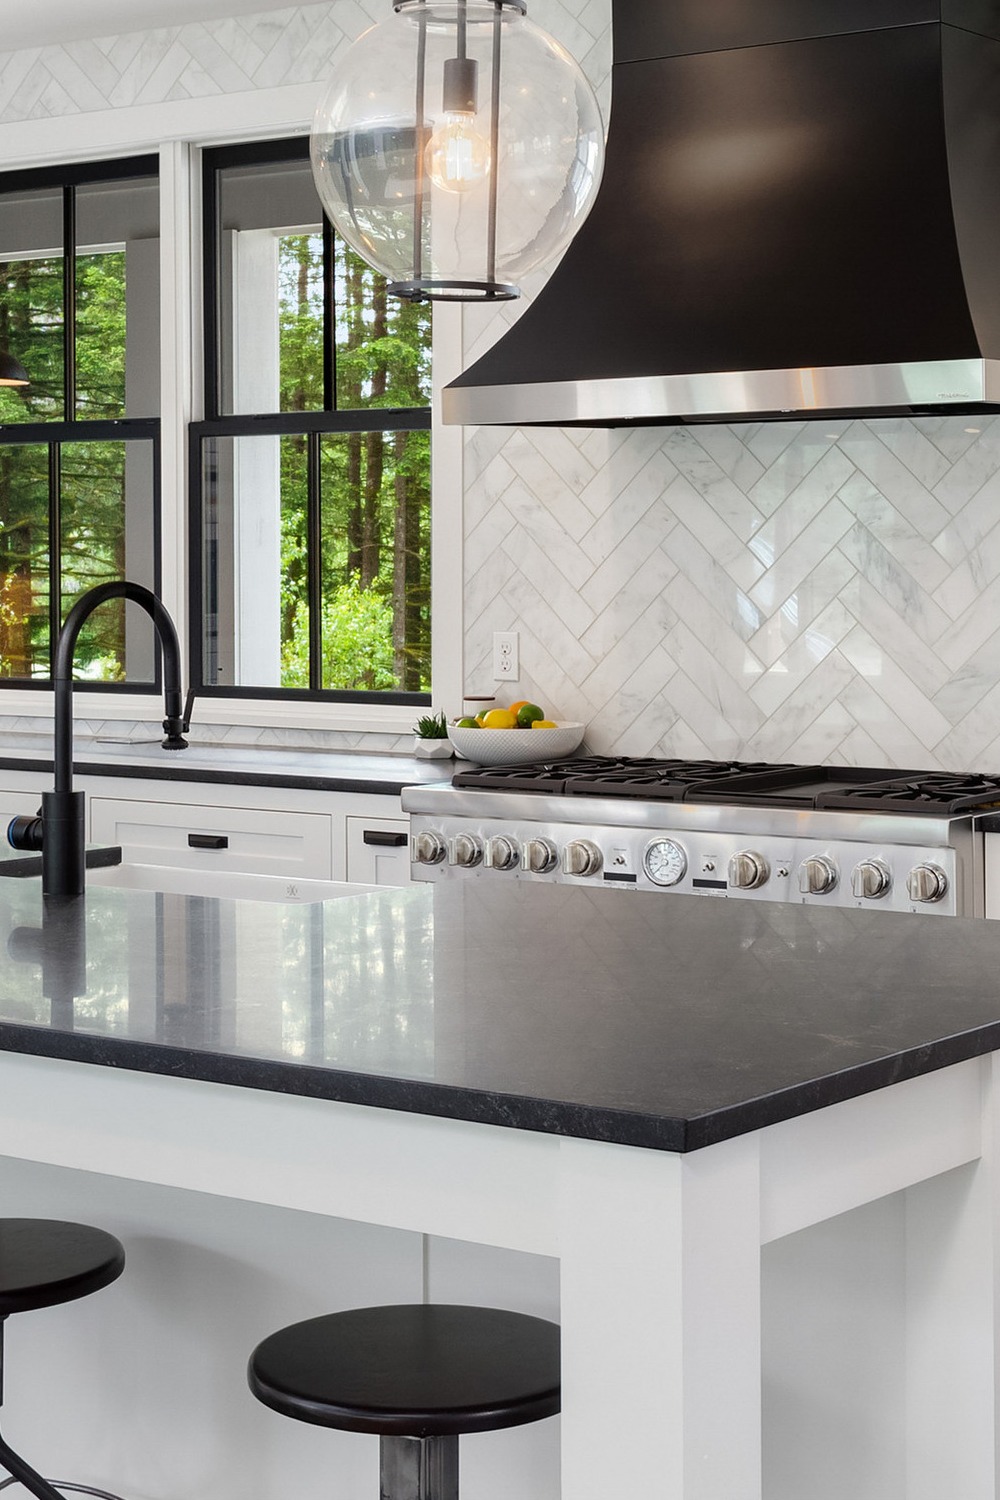 Dark Color Quartz Countertops Design Ideas Black Veins Color Scheme Busy Kitchens